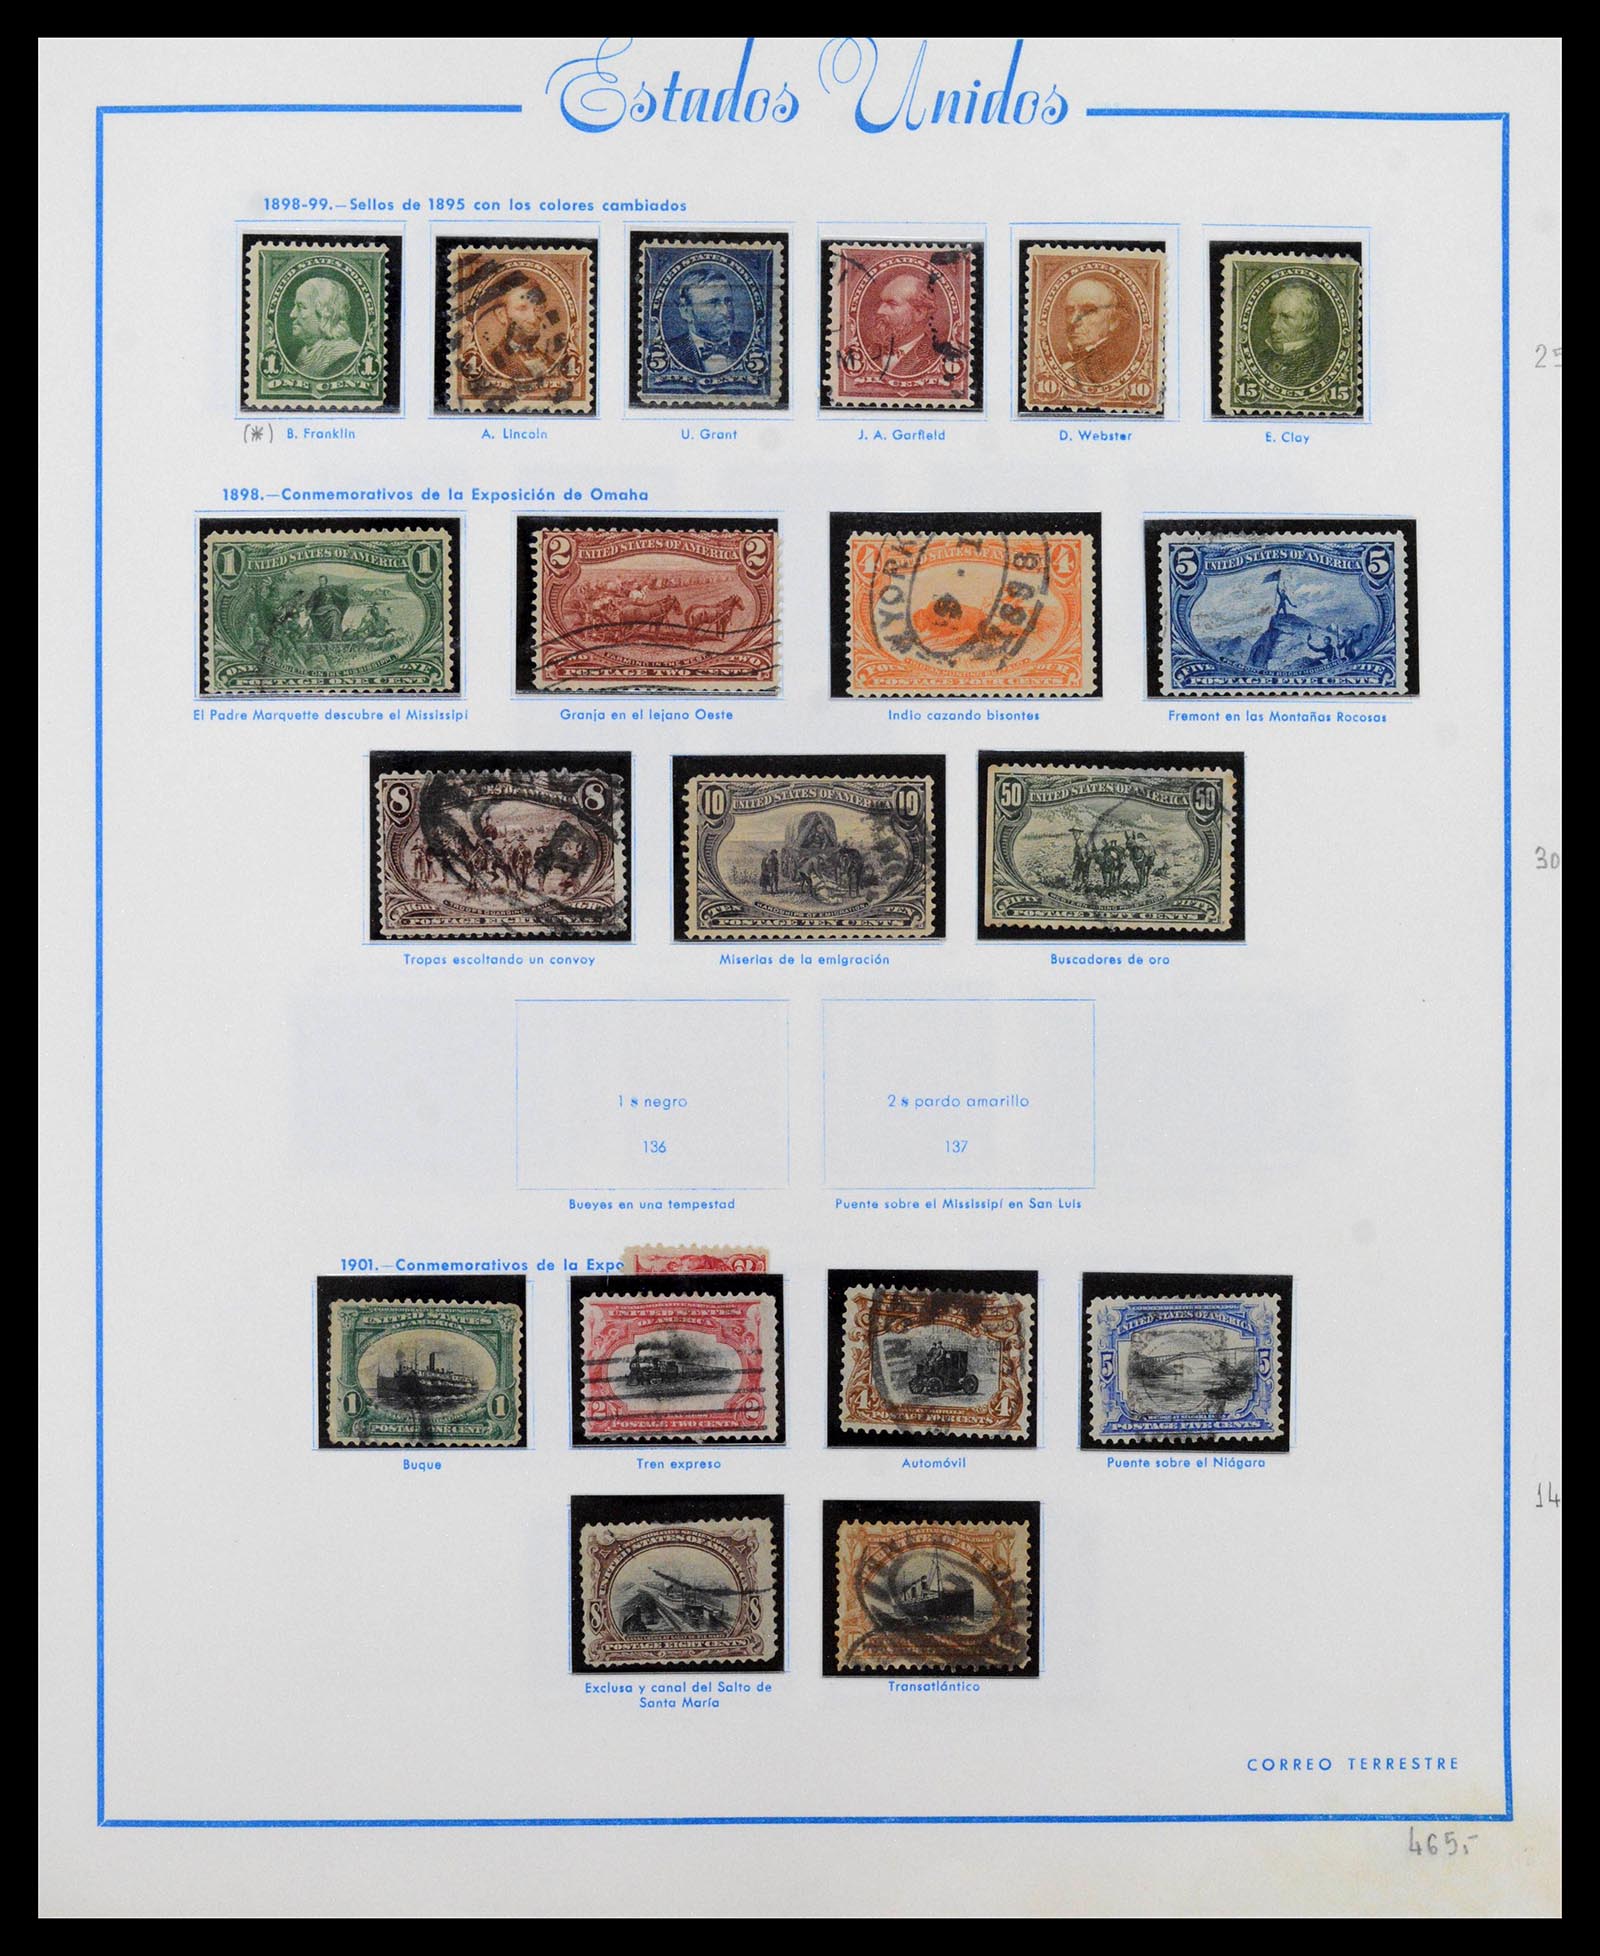 39190 0008 - Stamp collection 39190 USA 1851-1975.